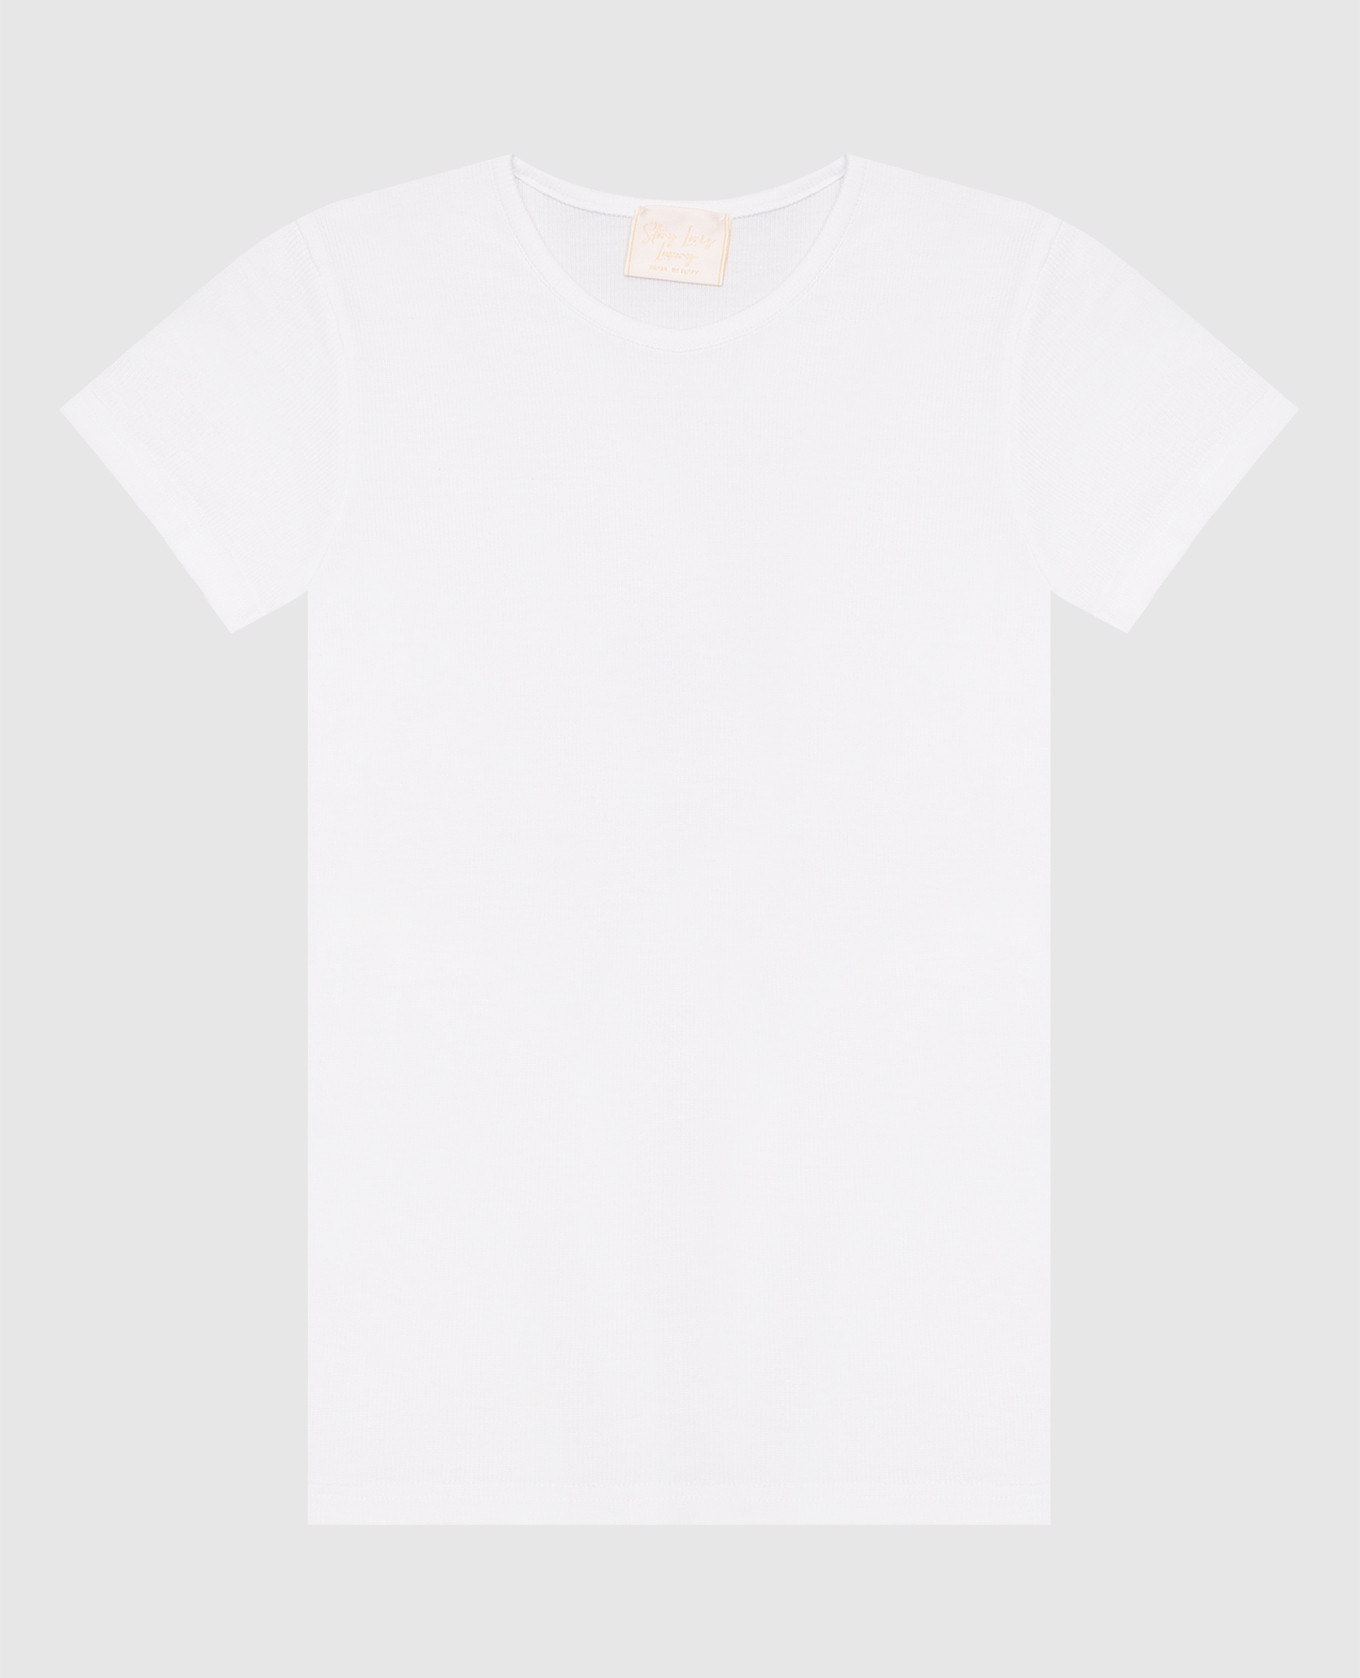 Children's white T-shirt